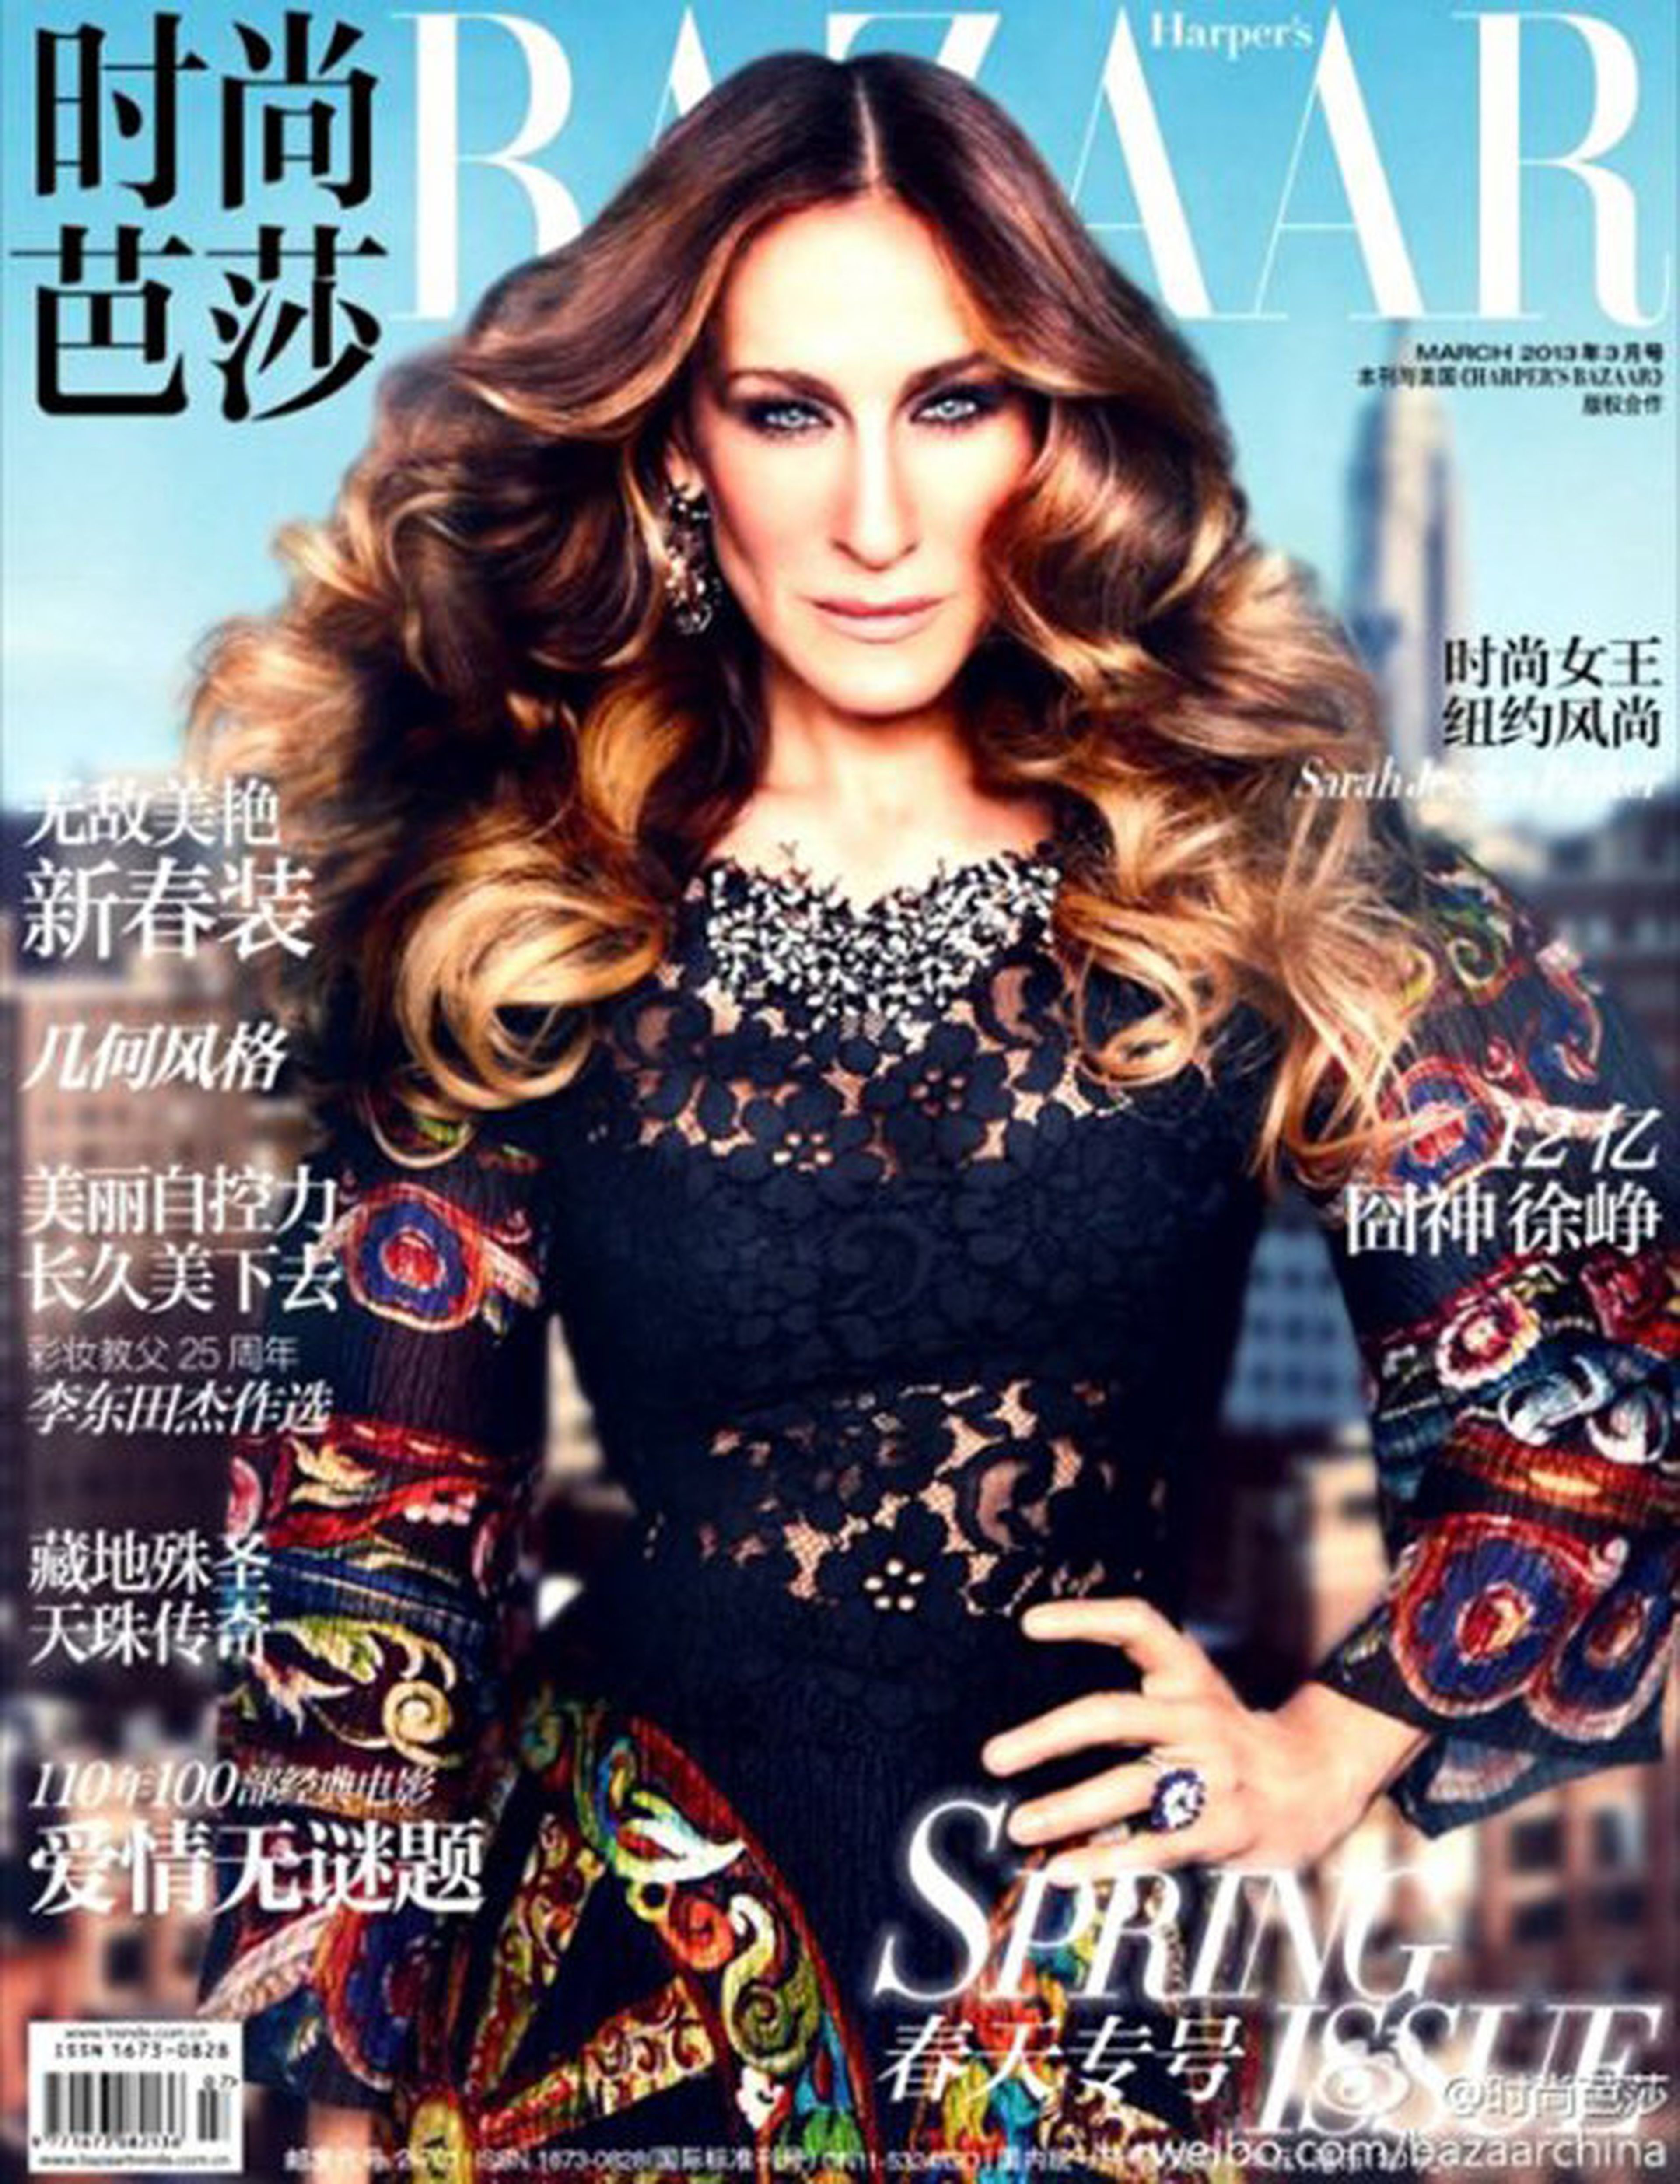 Sarah Jessica Parker fue la portada de marzo de 2013 de Harper's Bazaar China.